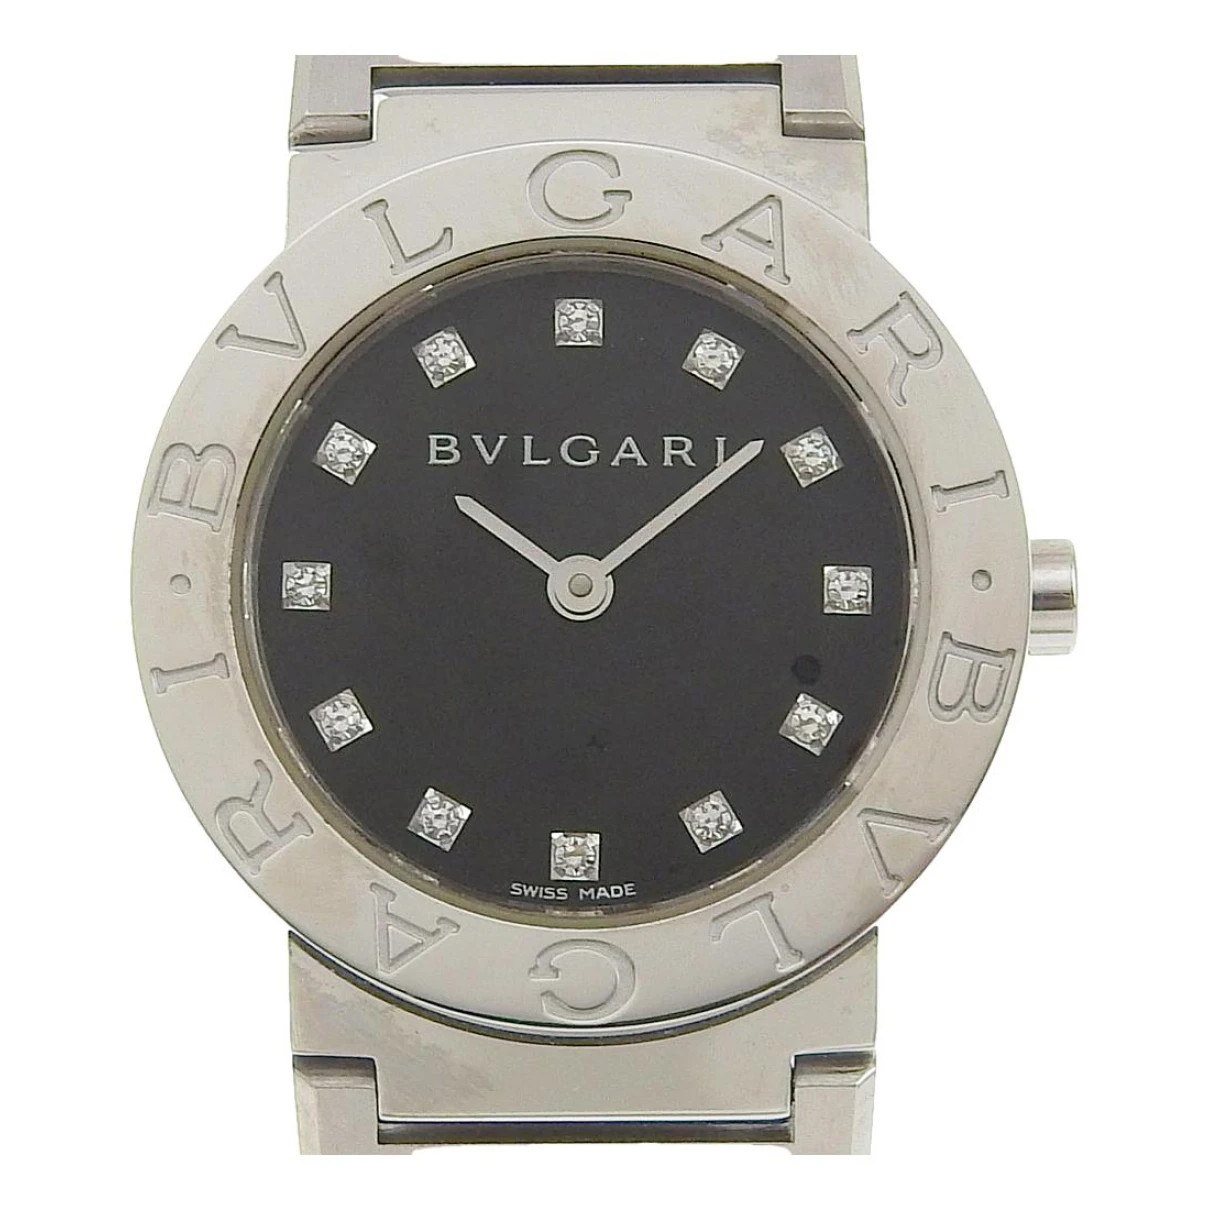 Pre-owned Bvlgari Bulgari Watch In Black